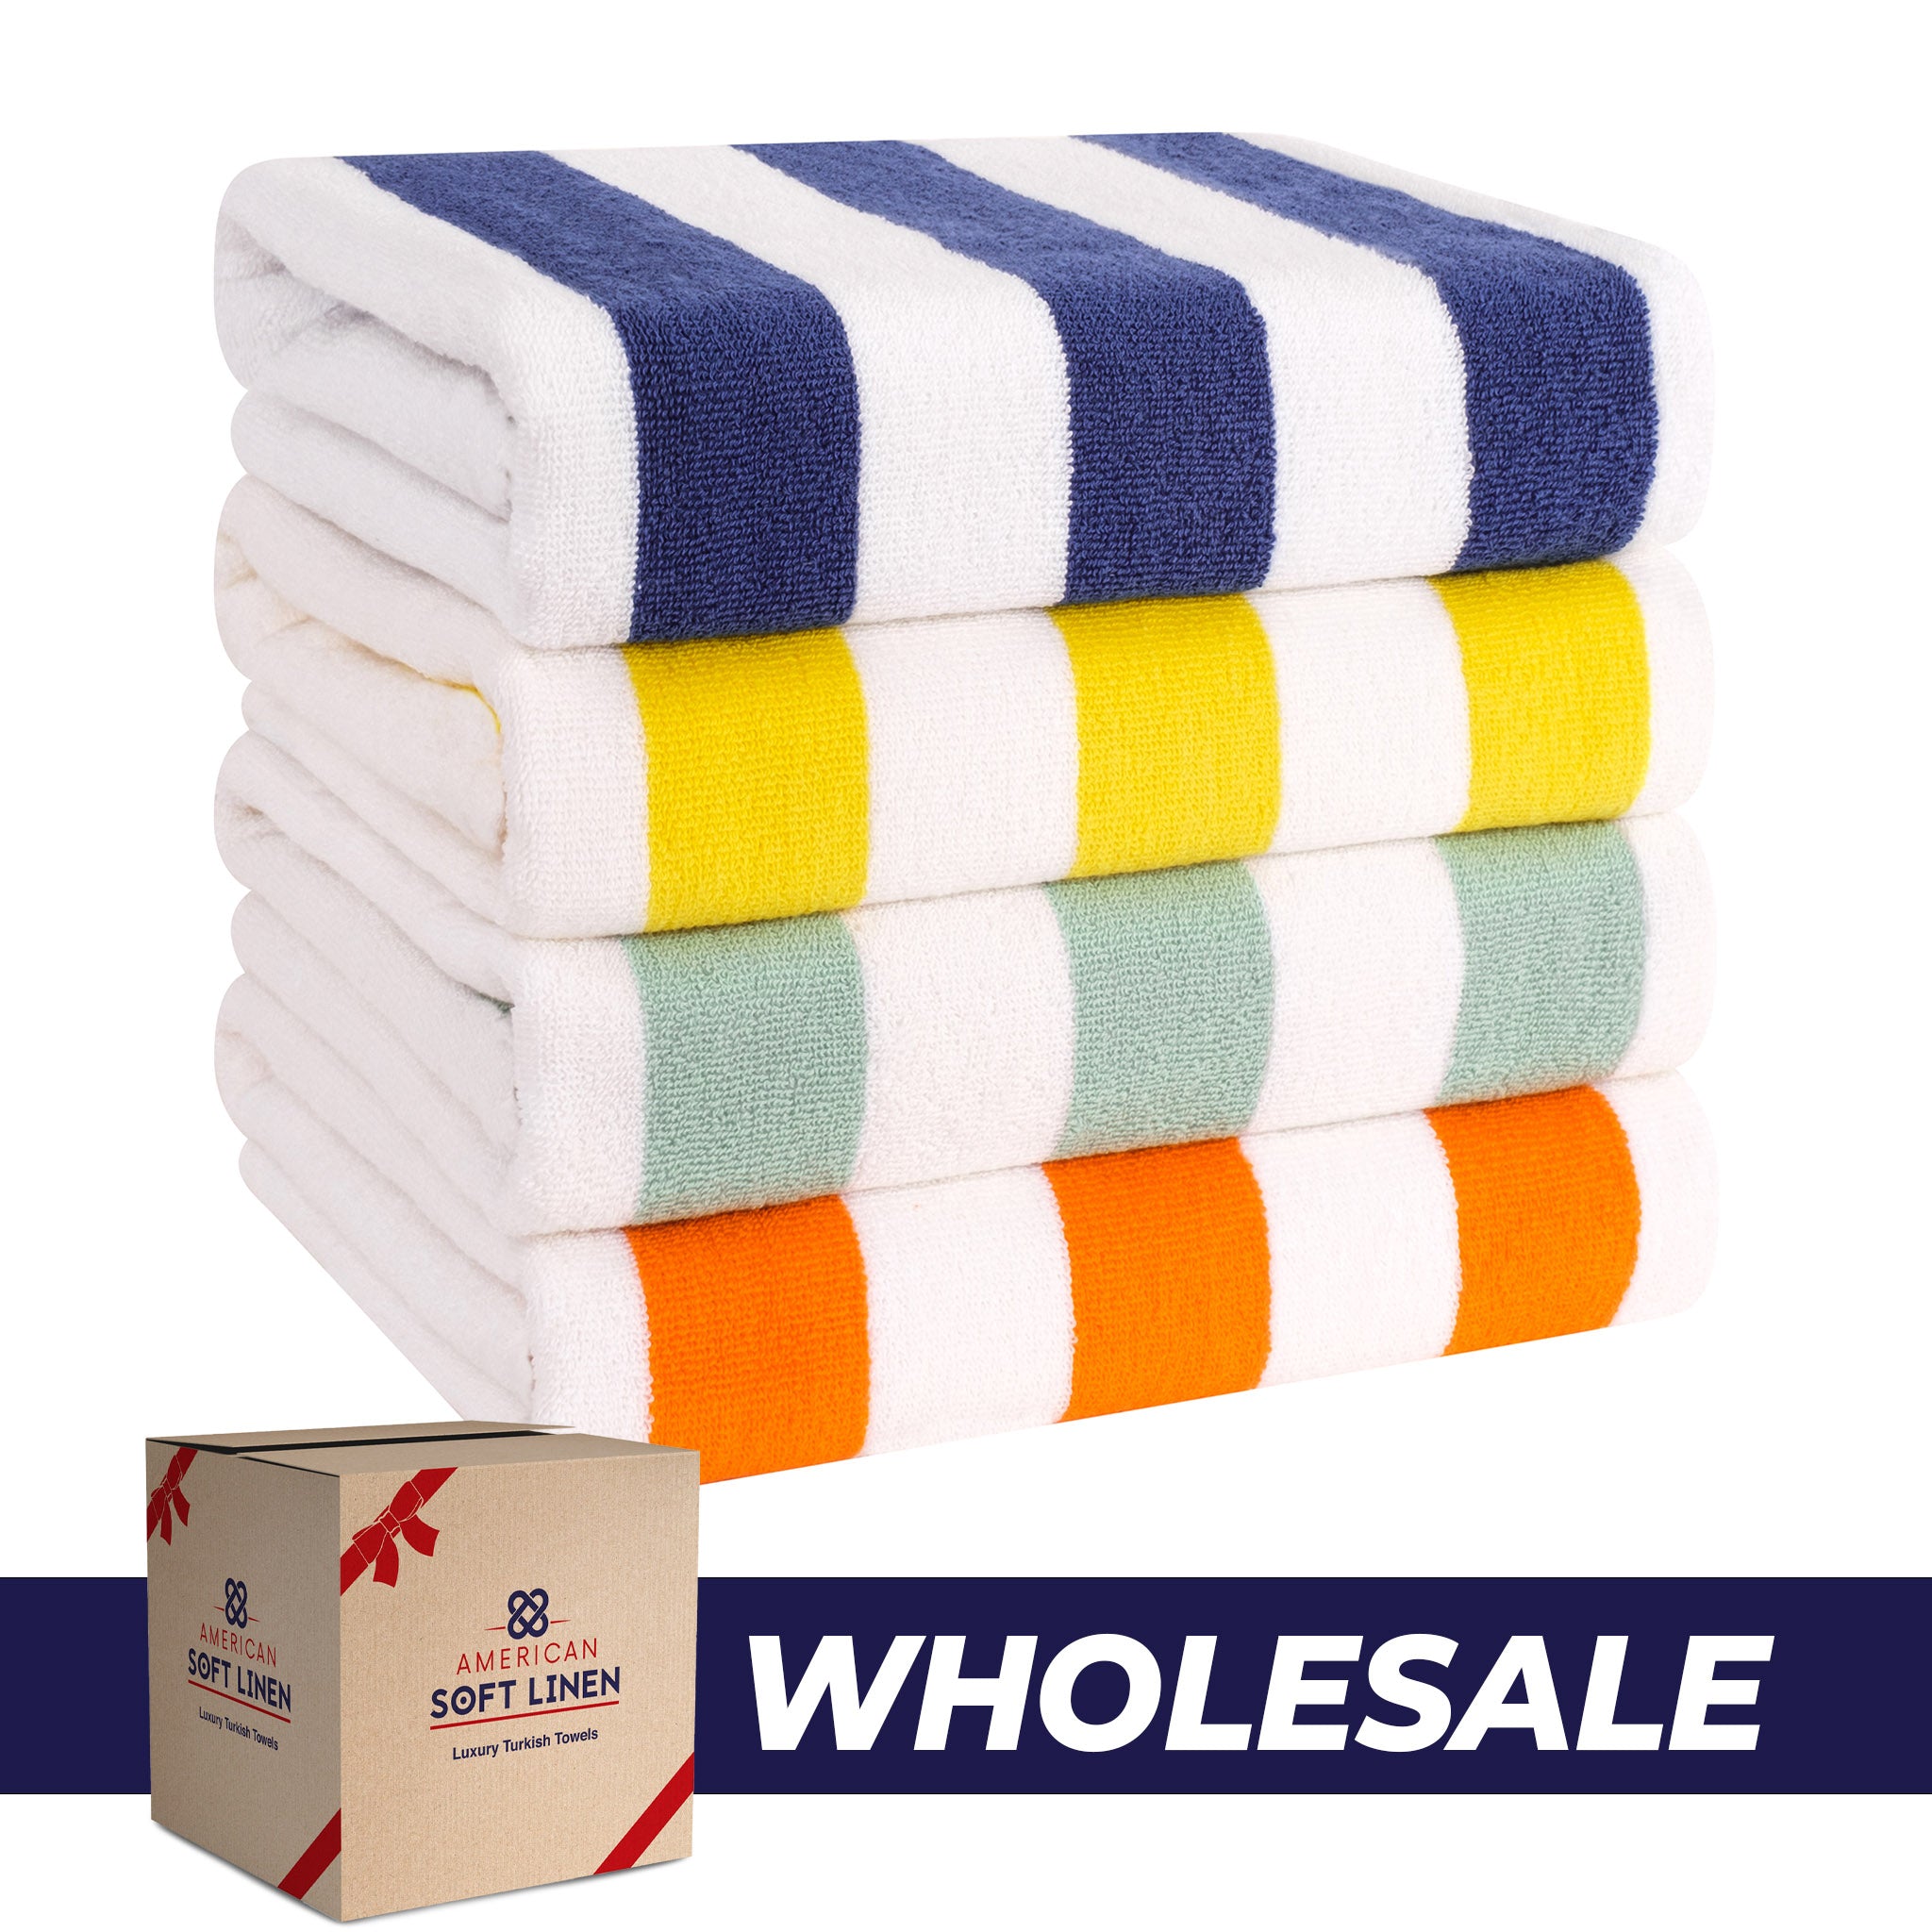 https://americansoftlinen.com/cdn/shop/files/american-soft-linen-cabana-striped-4-pack-cotton-beach-towels-30x60-8-set-case-pack-mix-0.jpg?v=1702898875